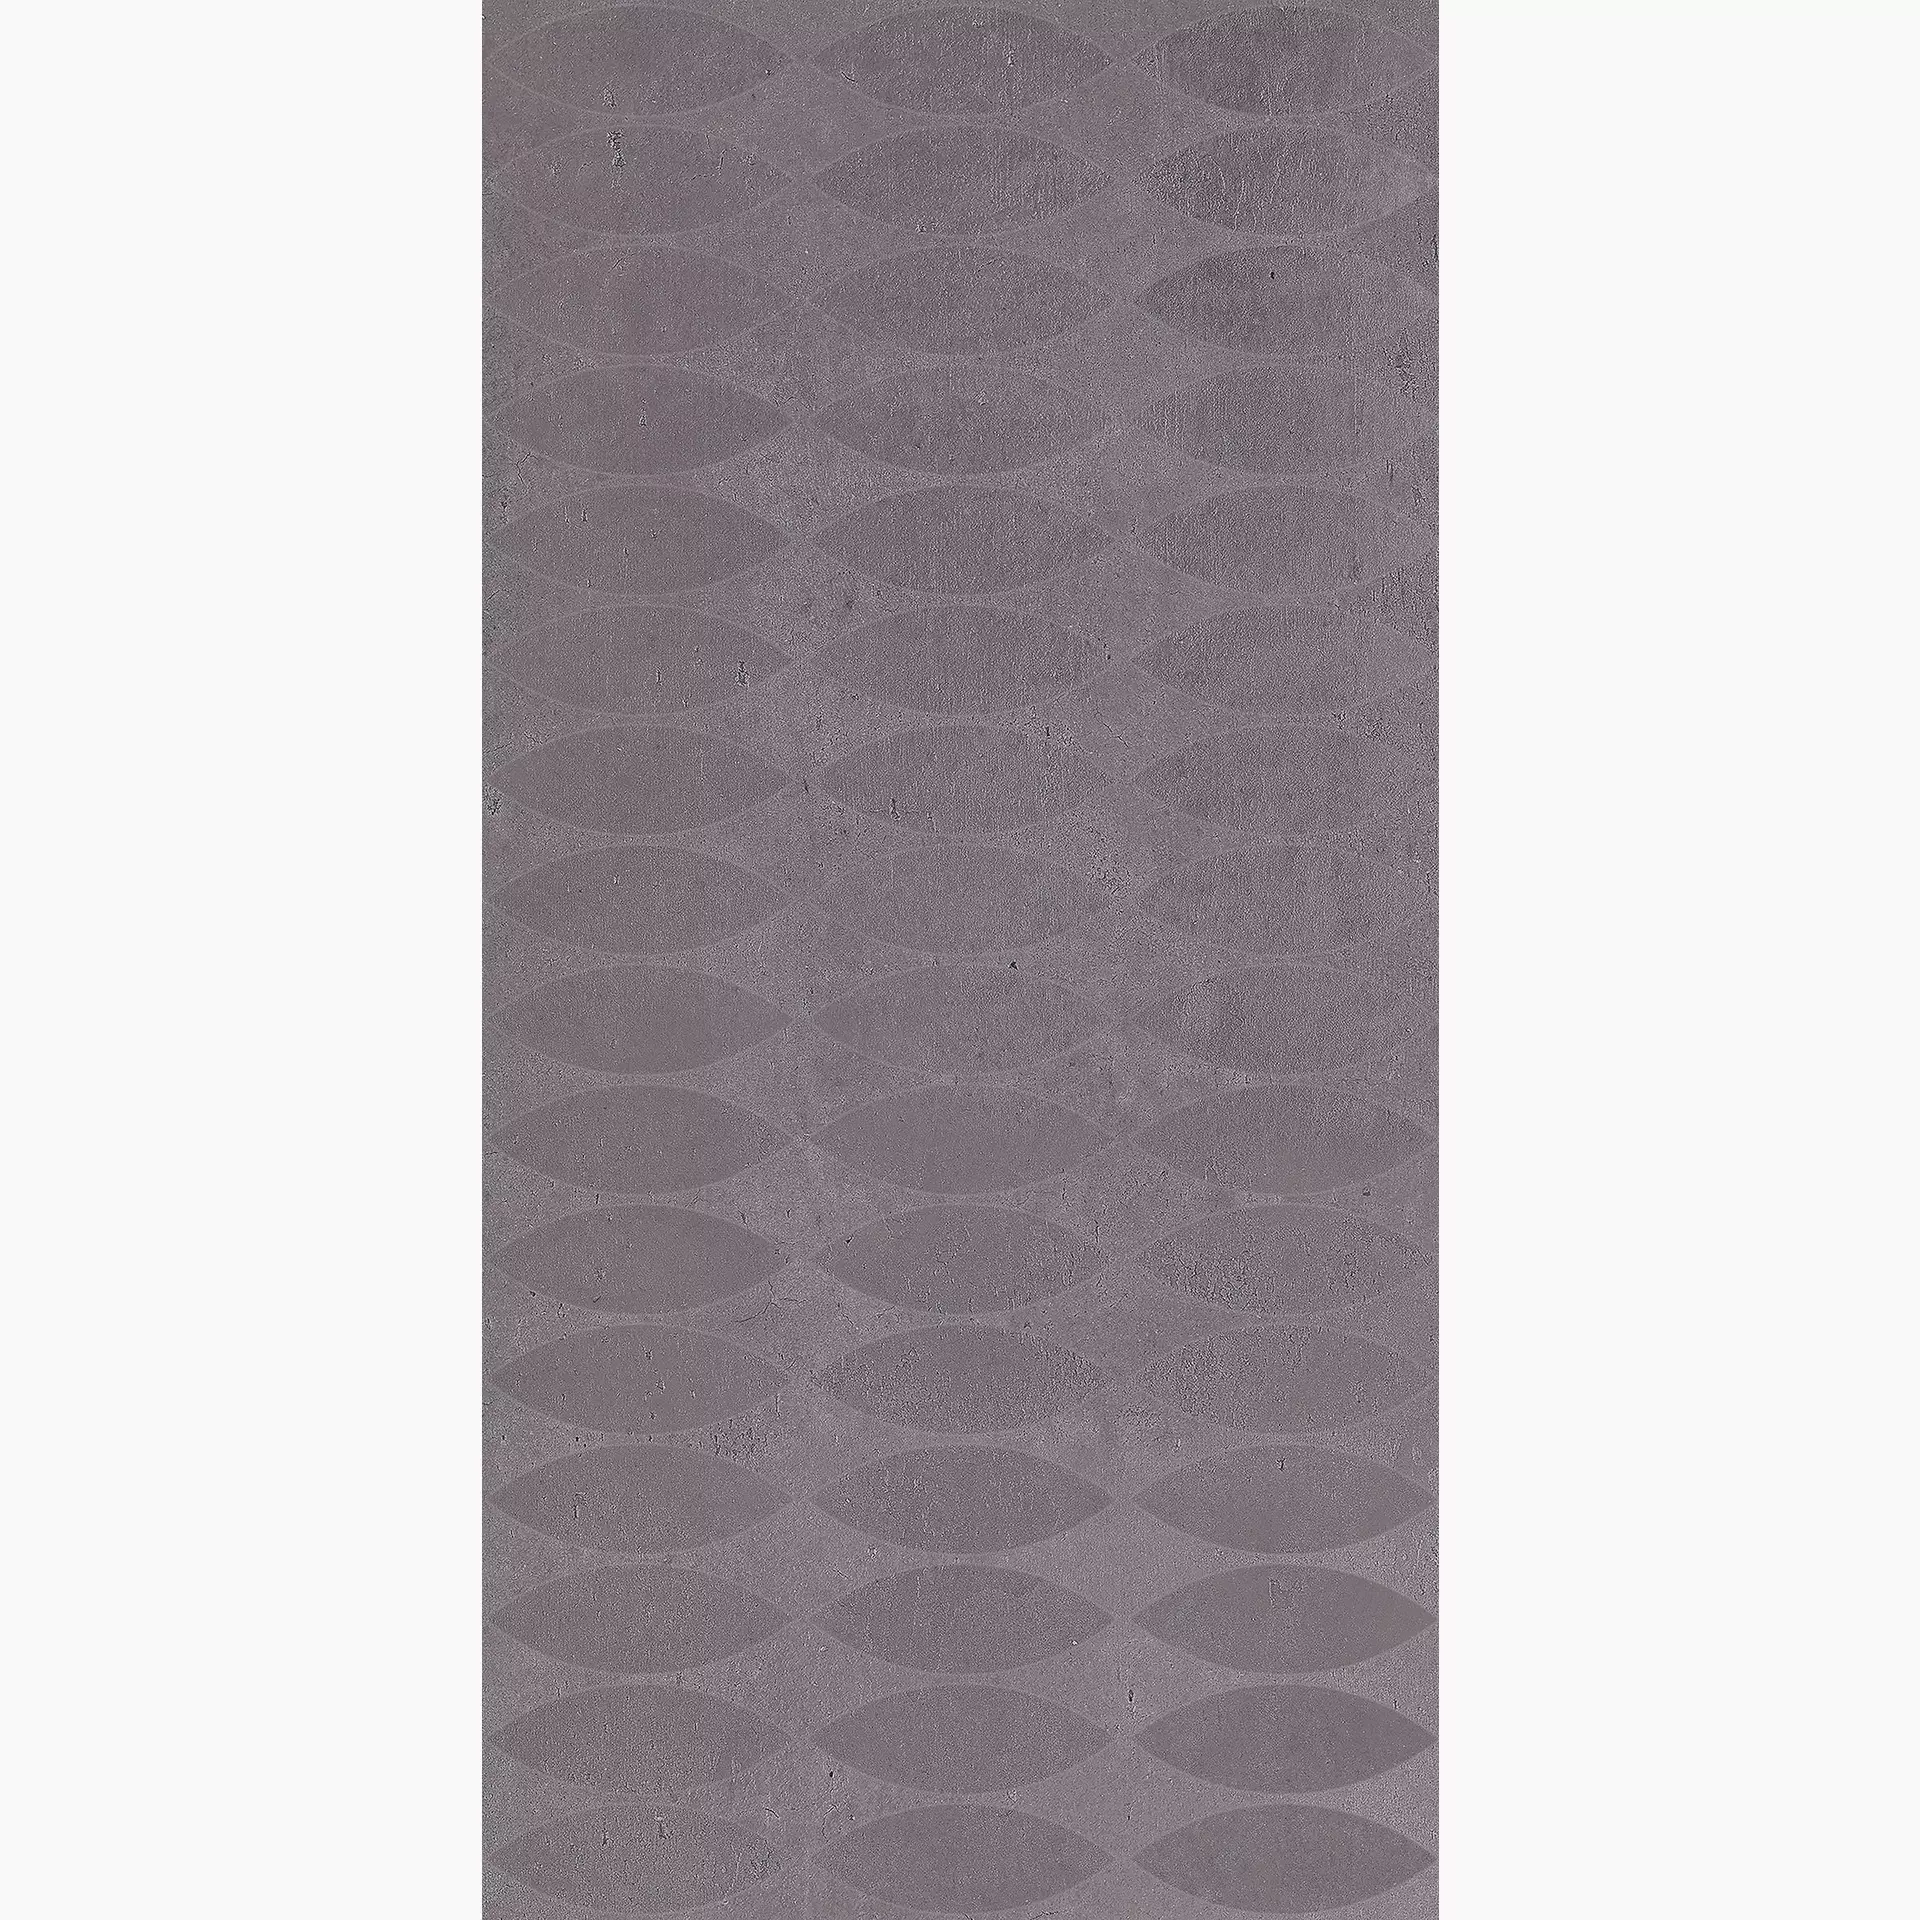 Cerdomus Legarage Grey Matt Dekor Spark 81940 30x60cm rektifiziert 9mm